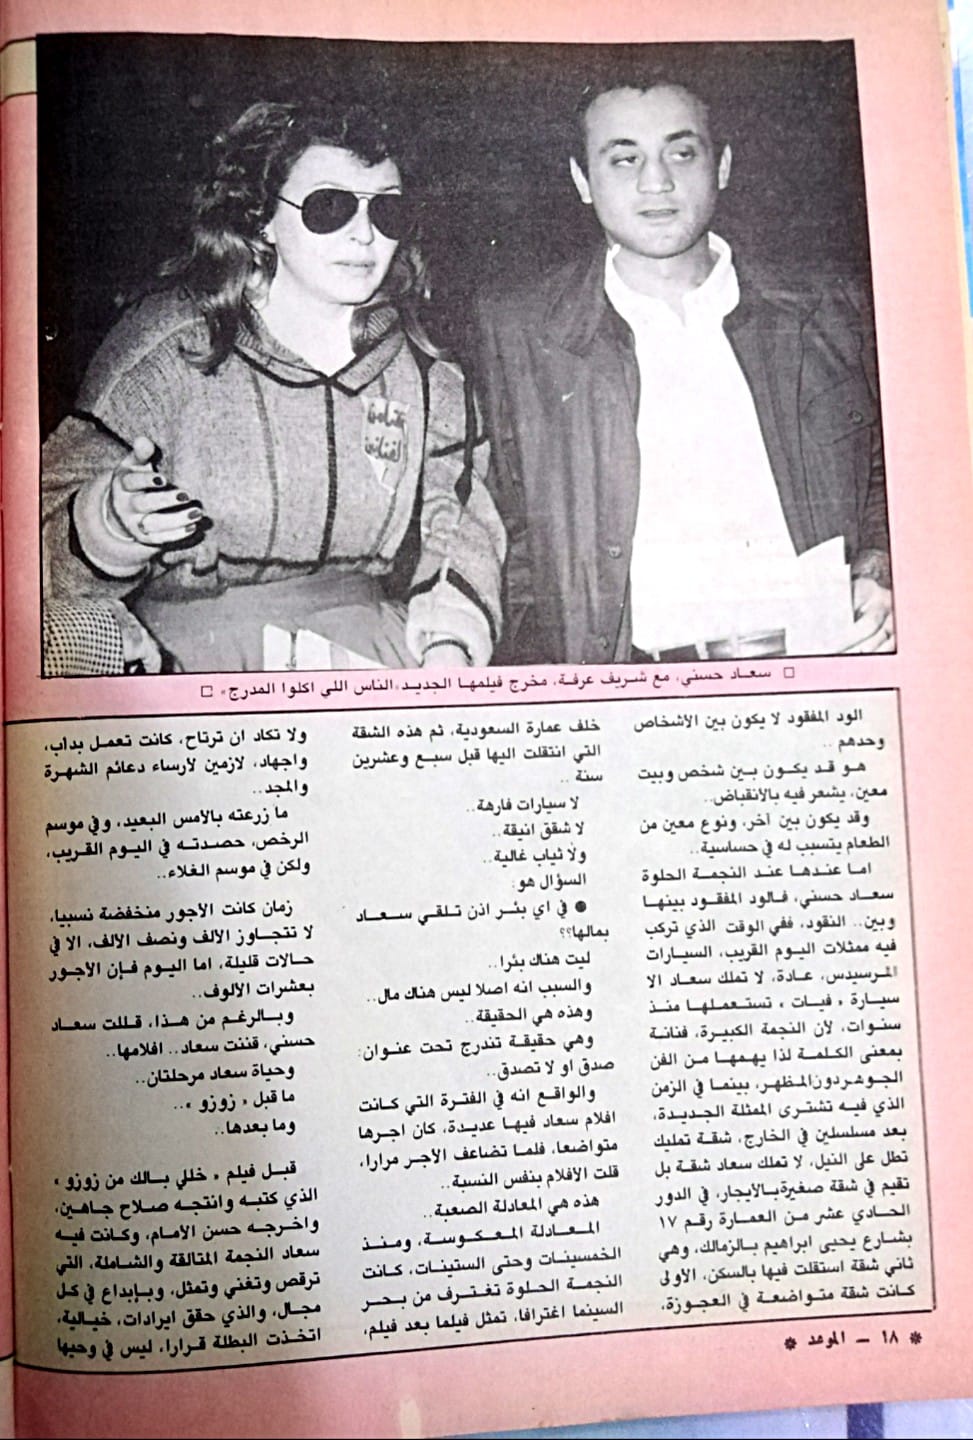 1988 - مقال صحفي : سعاد حسني .. بينها وبين الثراء ود .. مفقود ! 1988 م 313